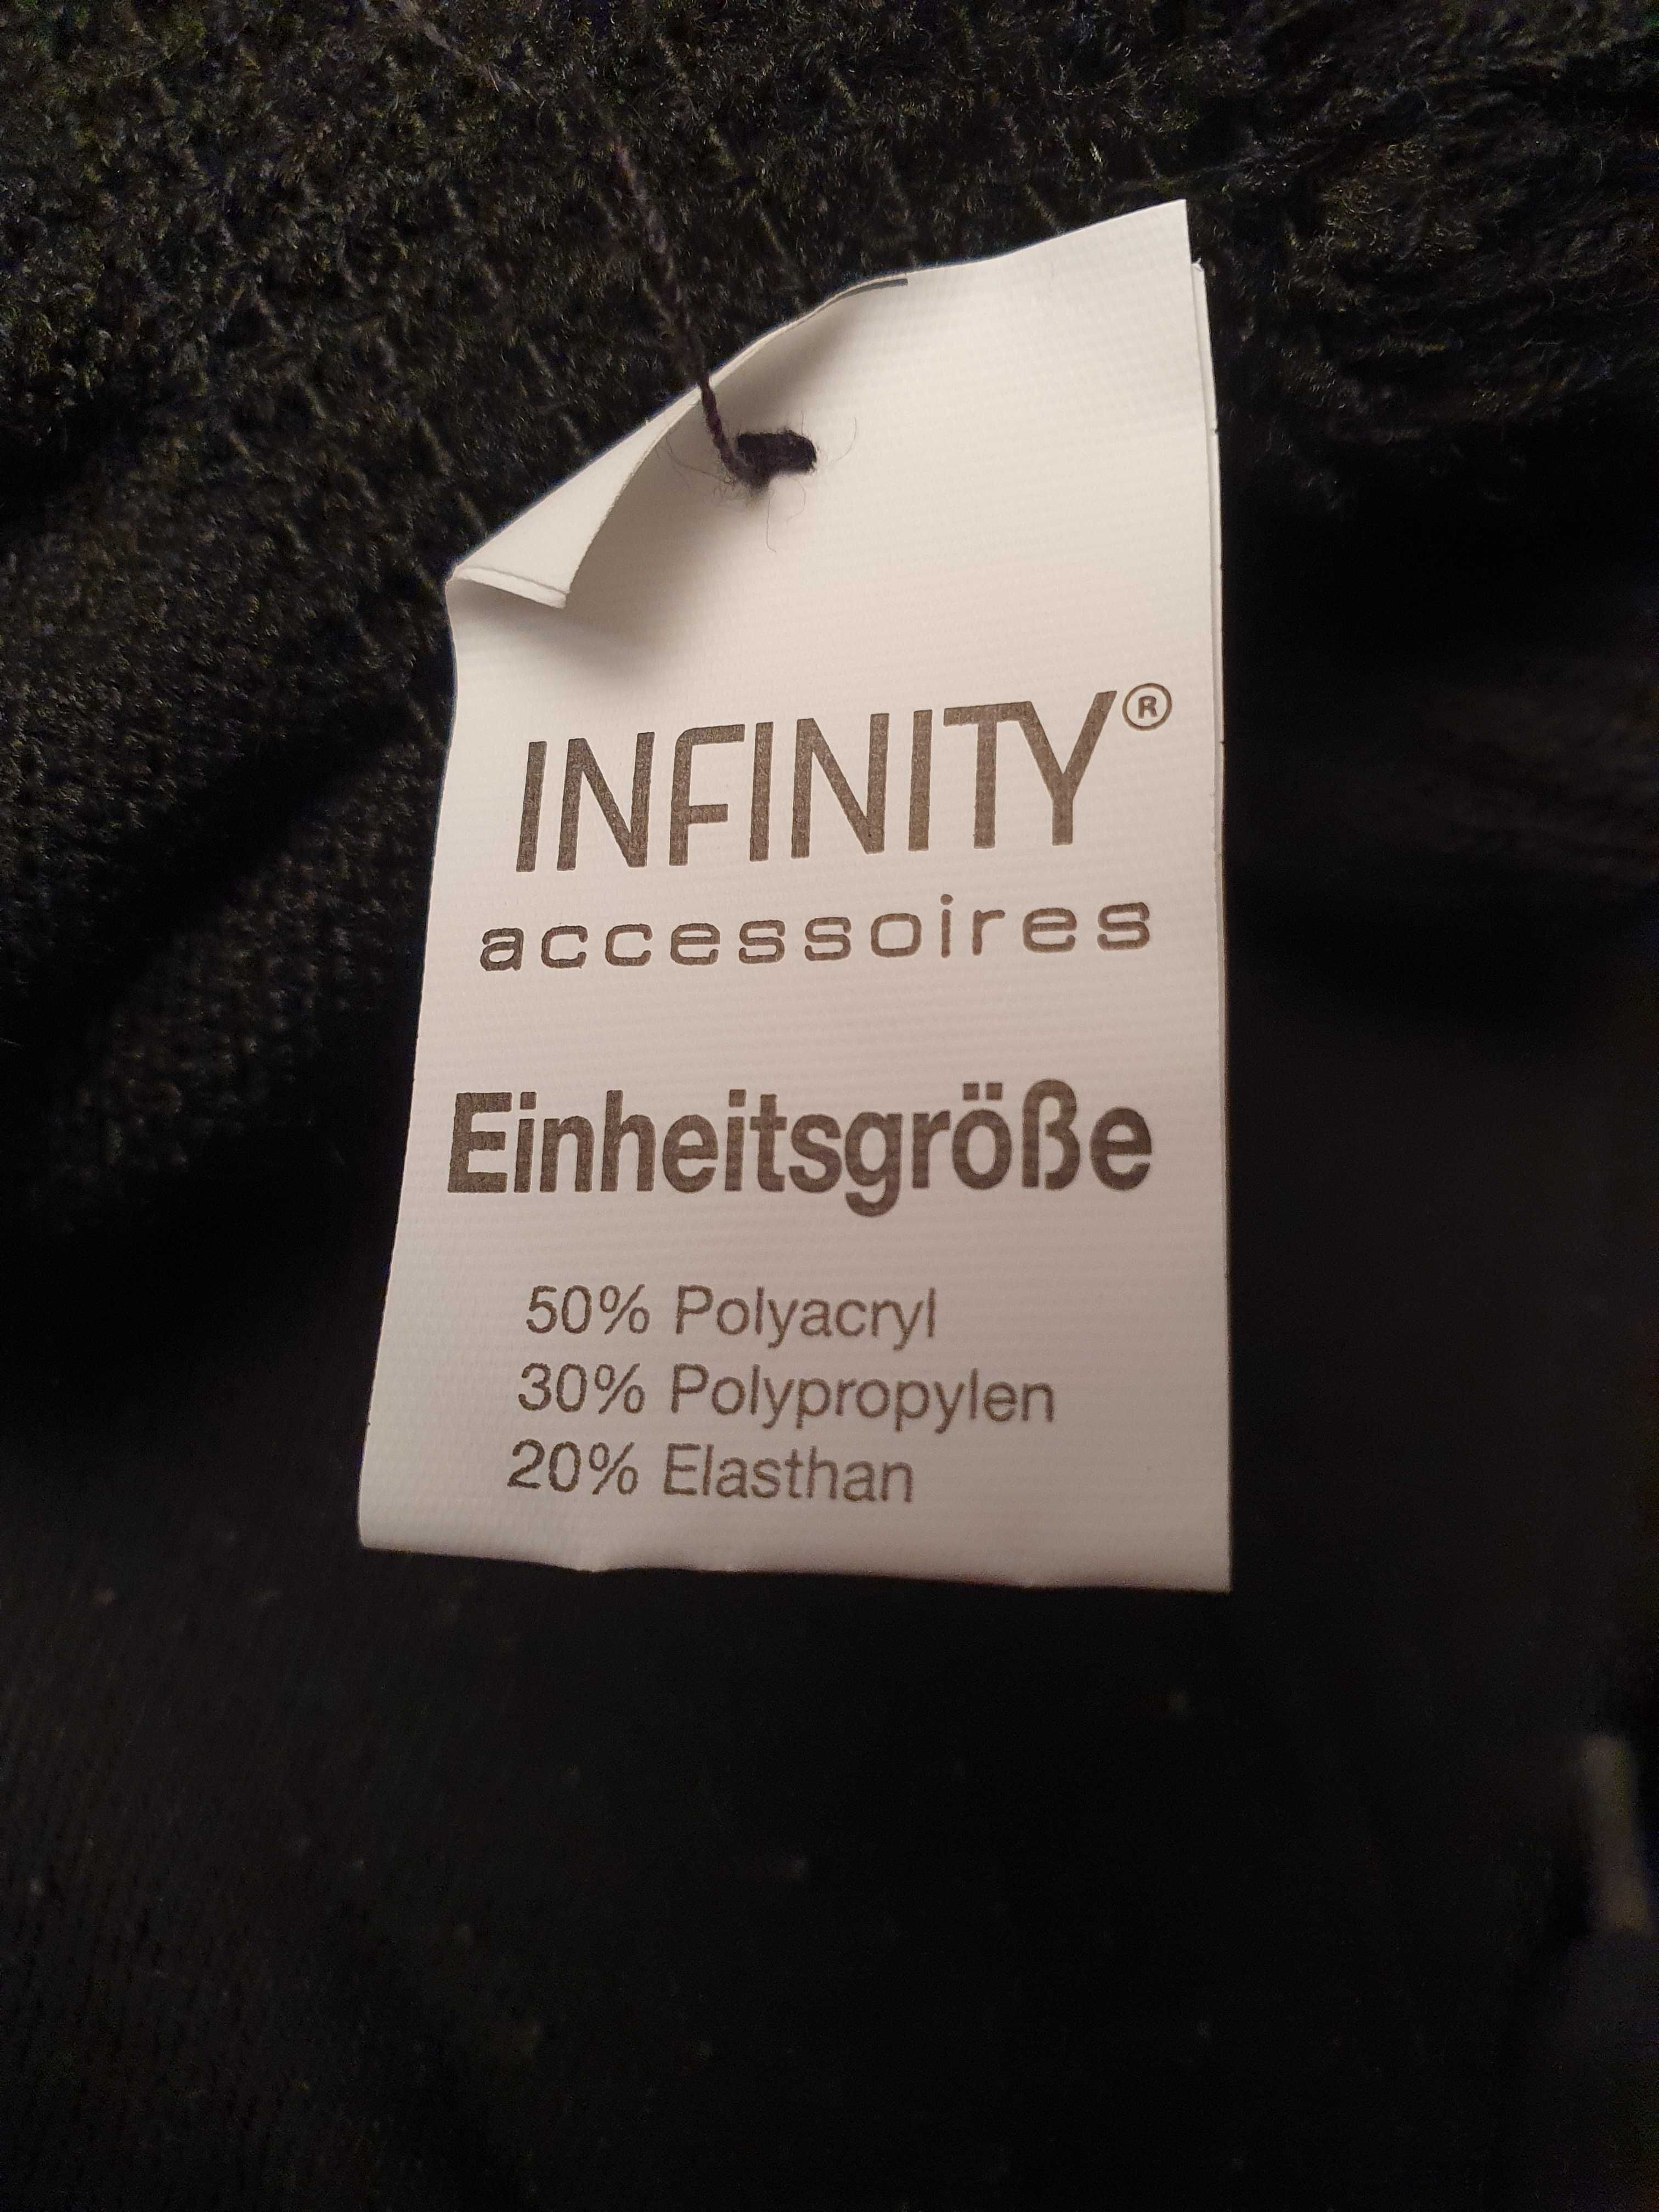 Nowe czarne rękawiczki ze srebrnymi ozdobami - kropeczkami. Infinity